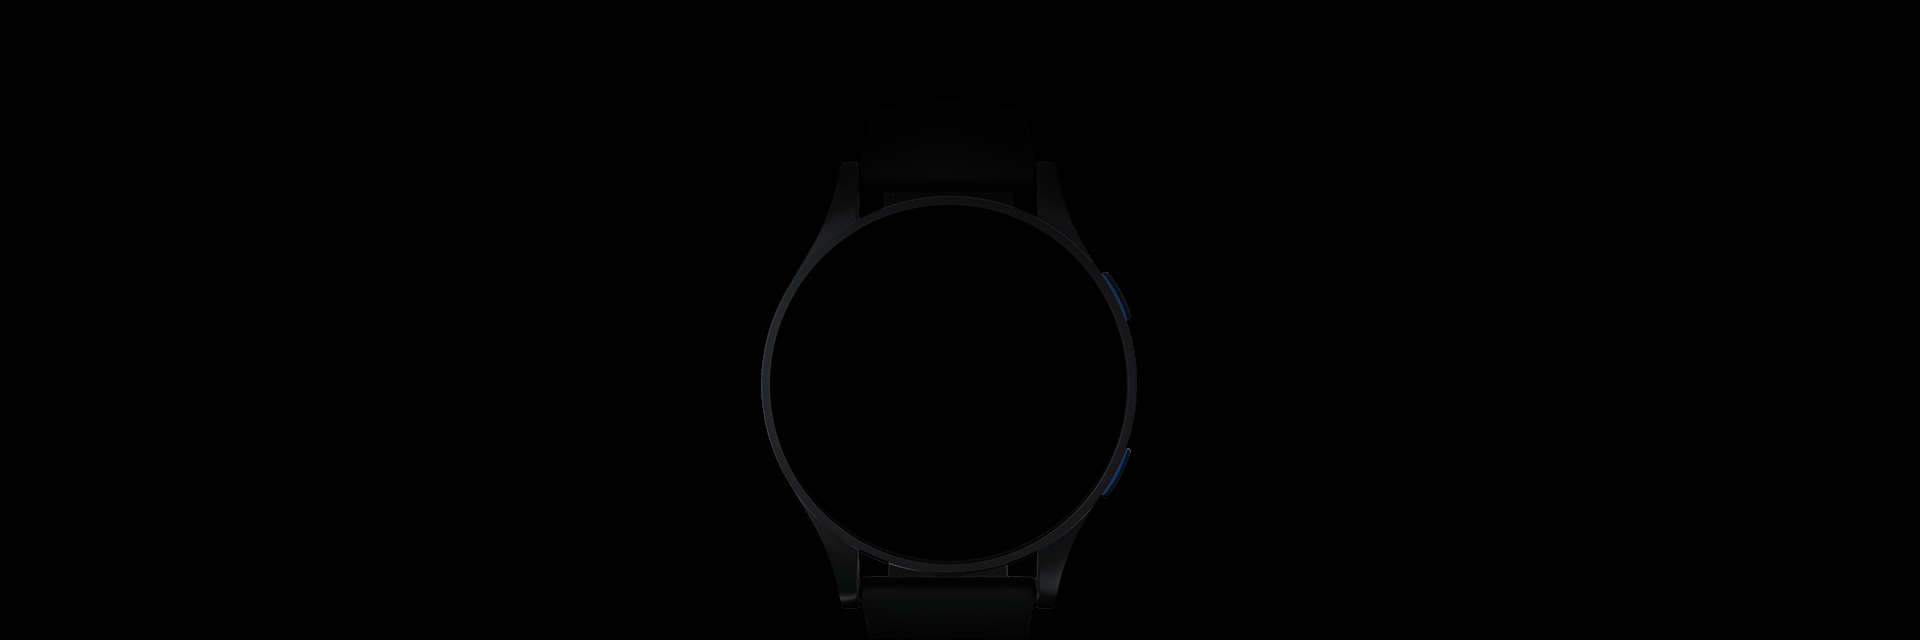 搭载三星Exynos W930的智能手表。